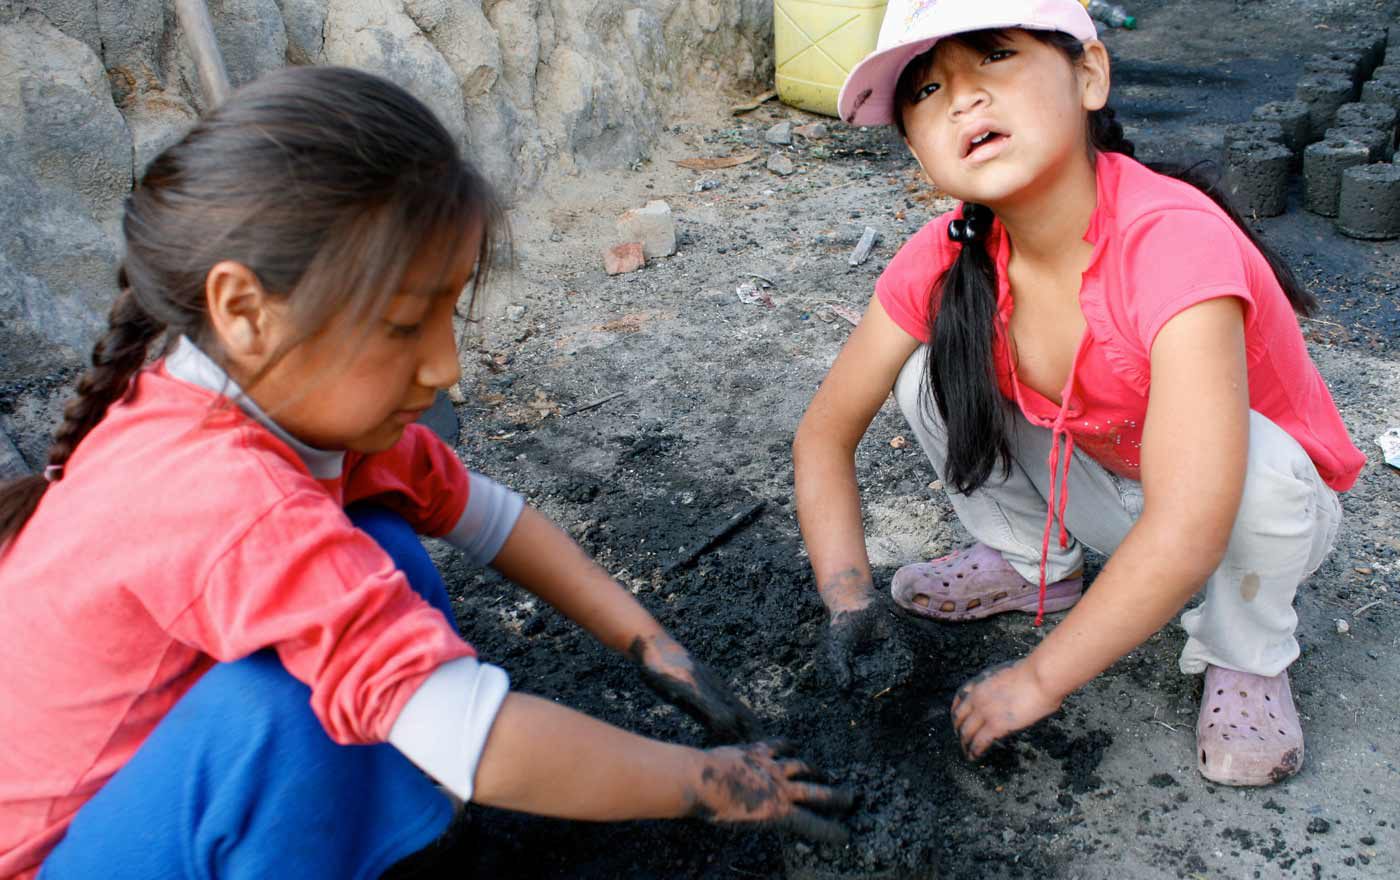 Arbeitende Kinder in den Ziegeleien von Santa Bárbara in Peru. Foto: Christian Herrmanny/Kindernothilfe